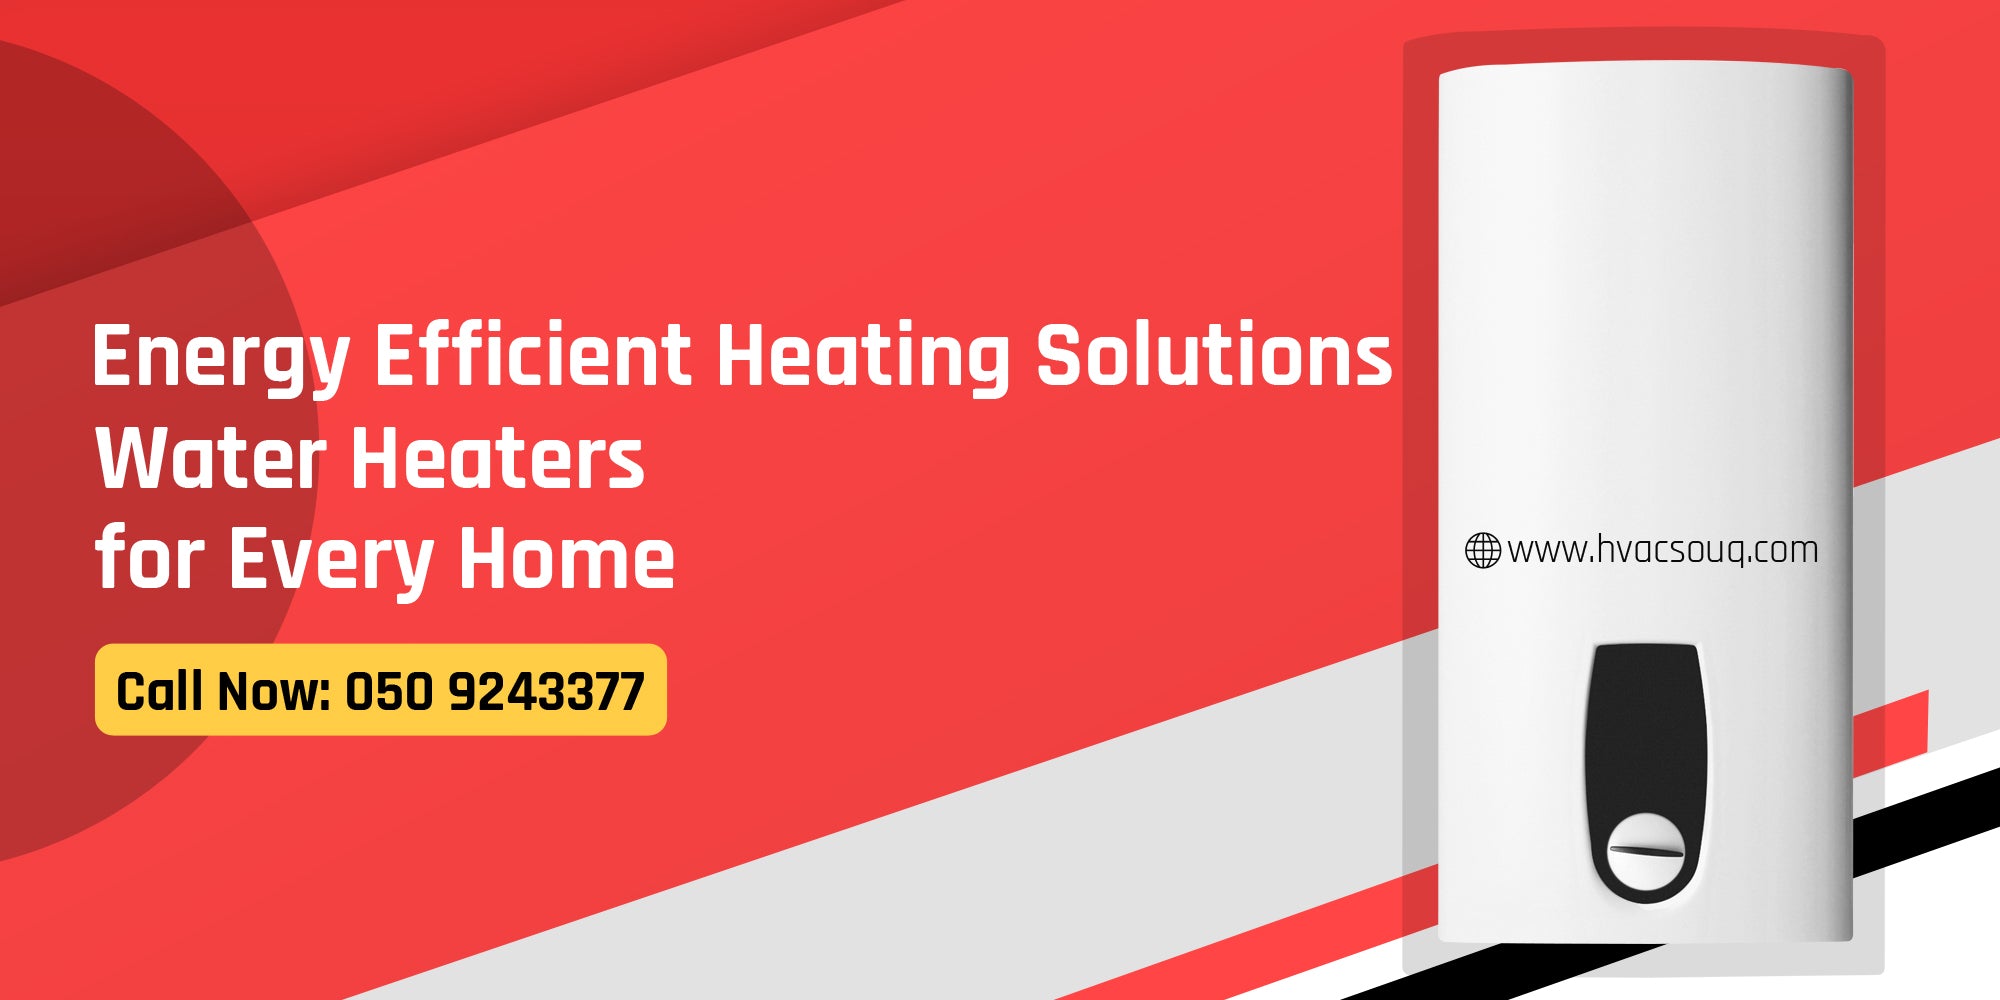 Water Heaters Supplier in Dubai